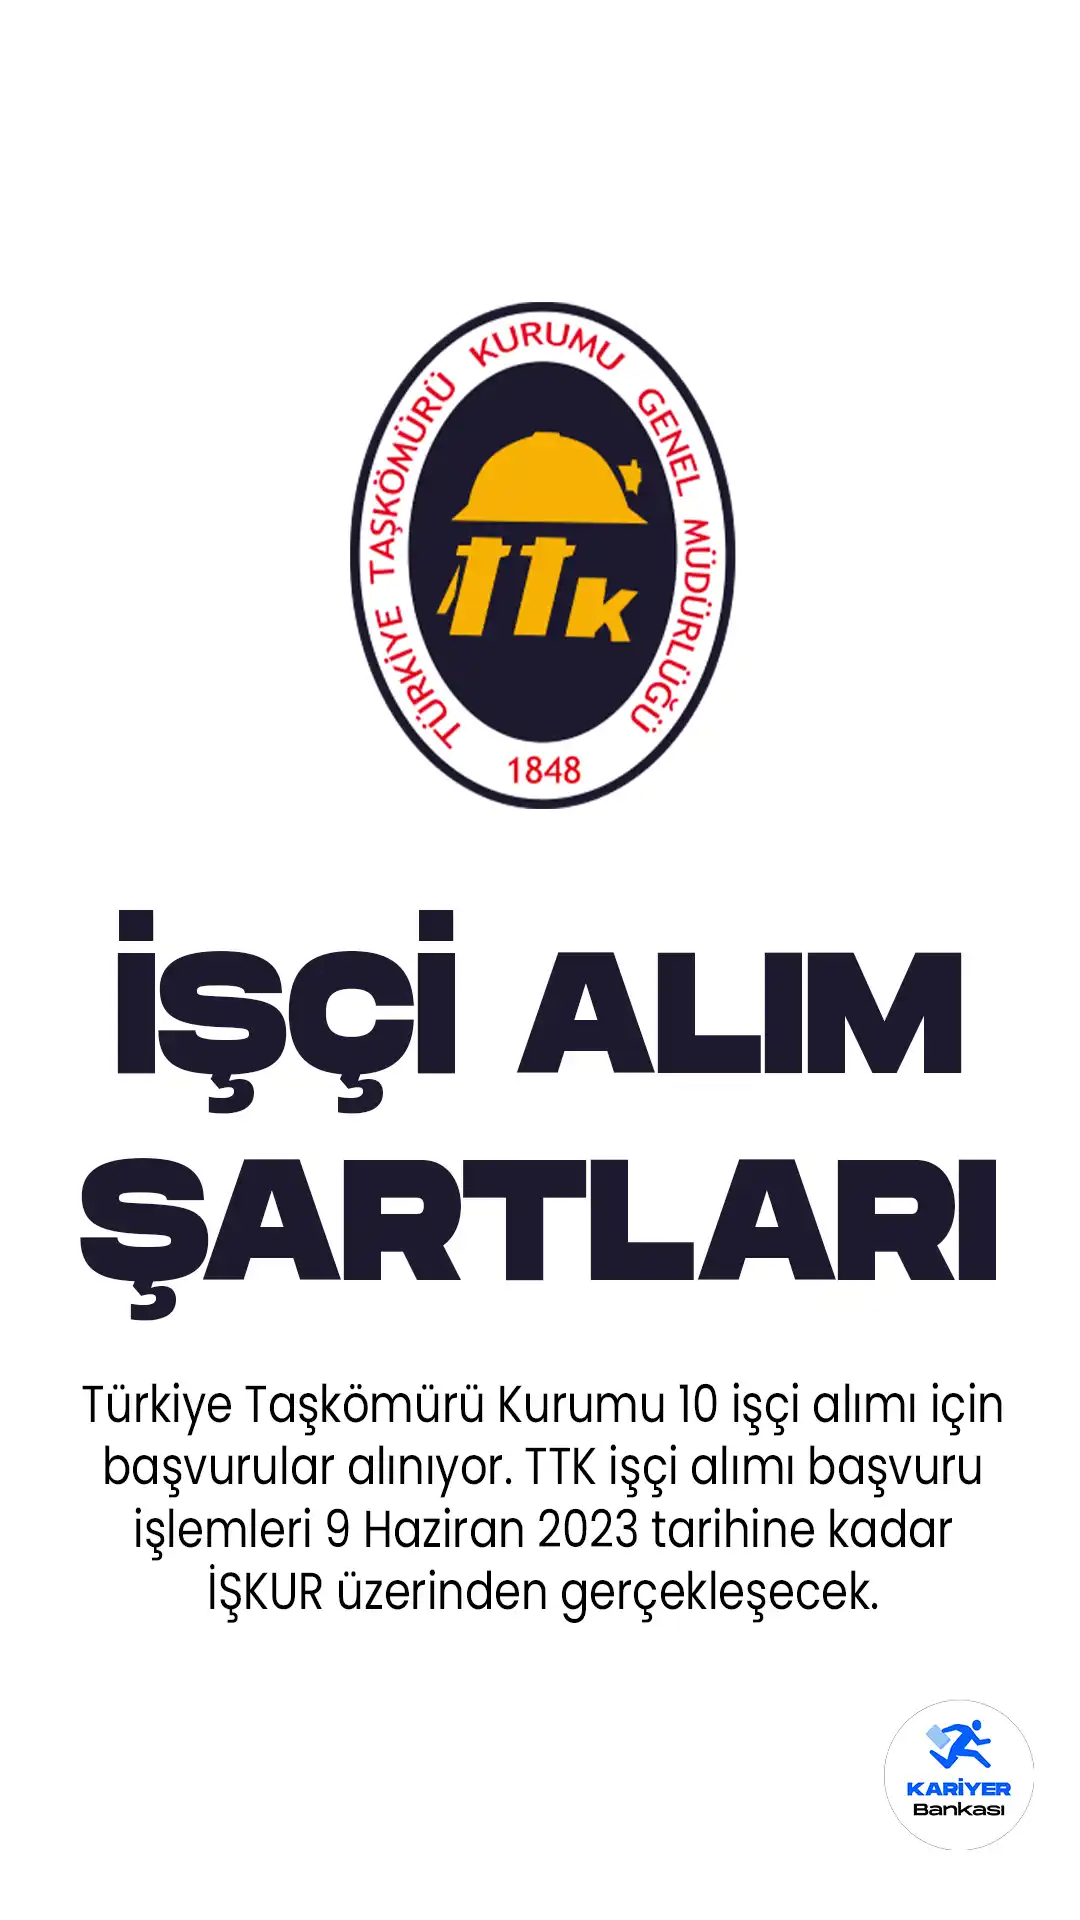 Türkiye Taşkömürü Kurumu 10 işçi alımı için başvurular alınıyor. TTK işçi alımı başvuru işlemleri 9 Haziran 2023 tarihine kadar İŞKUR üzerinden gerçekleşecek.